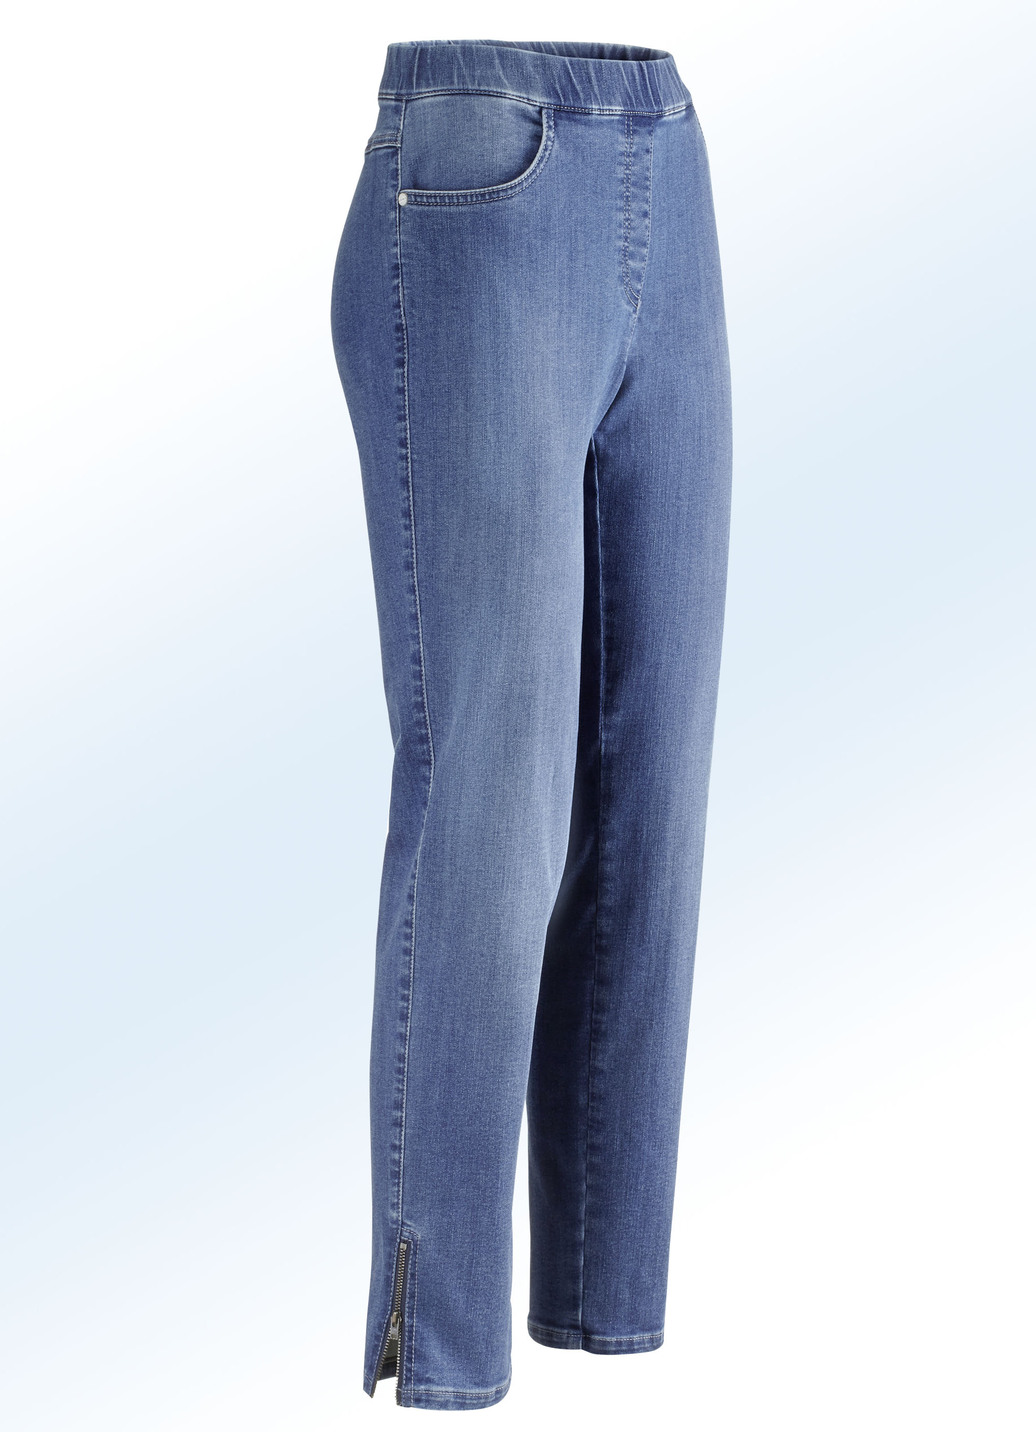 Magic-Jeans mit hohem Stretchanteil, Jeansblau, Größe 38 von ASCARI